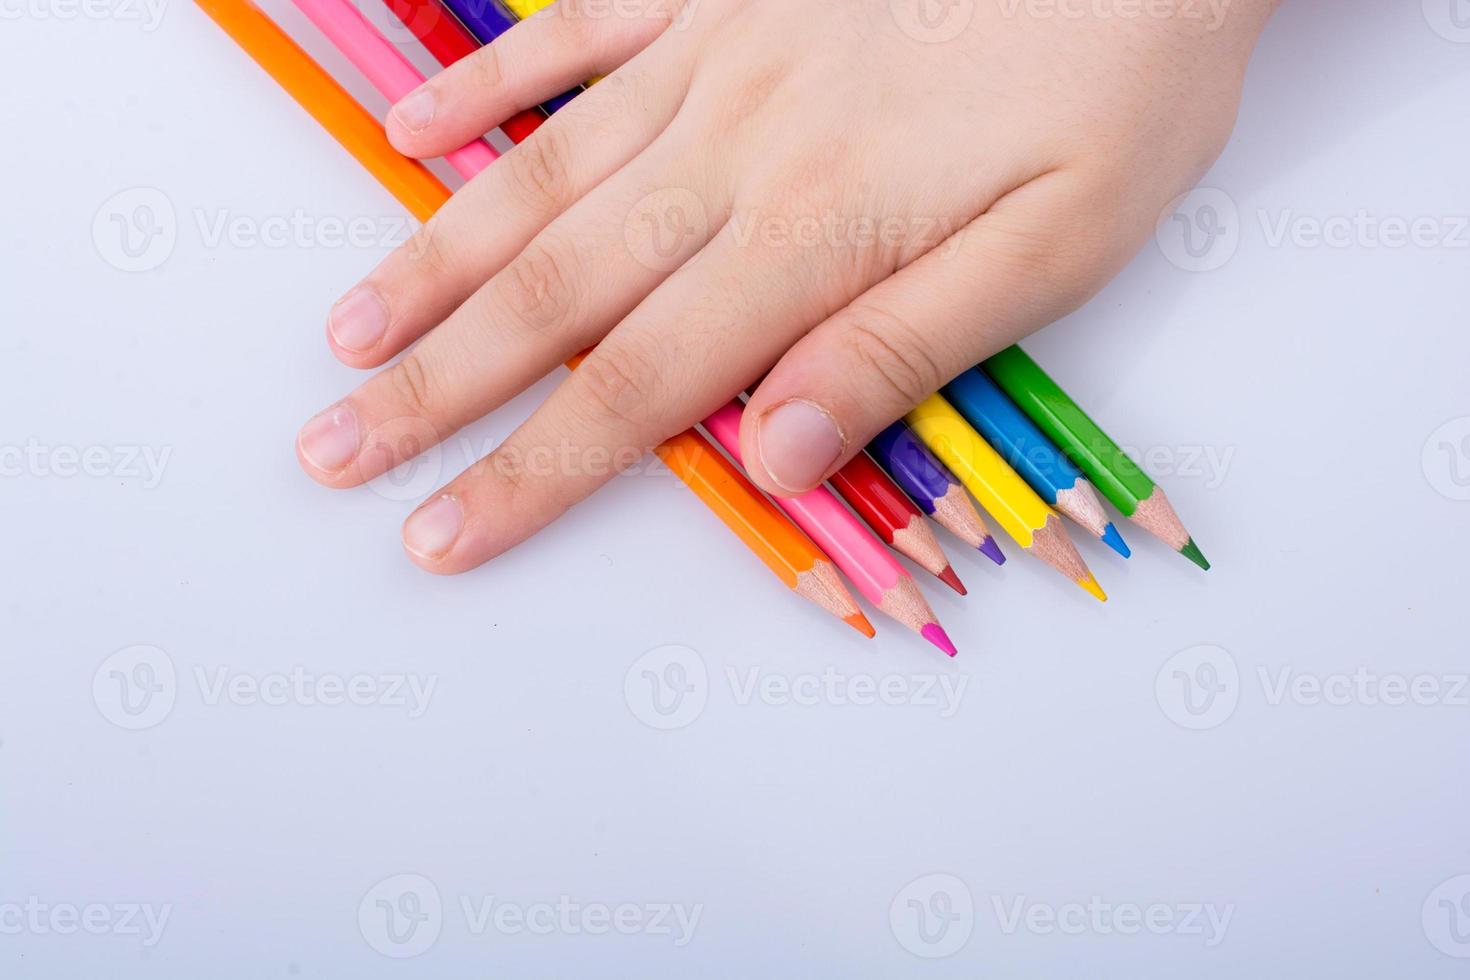 crayons de couleur sur fond blanc photo